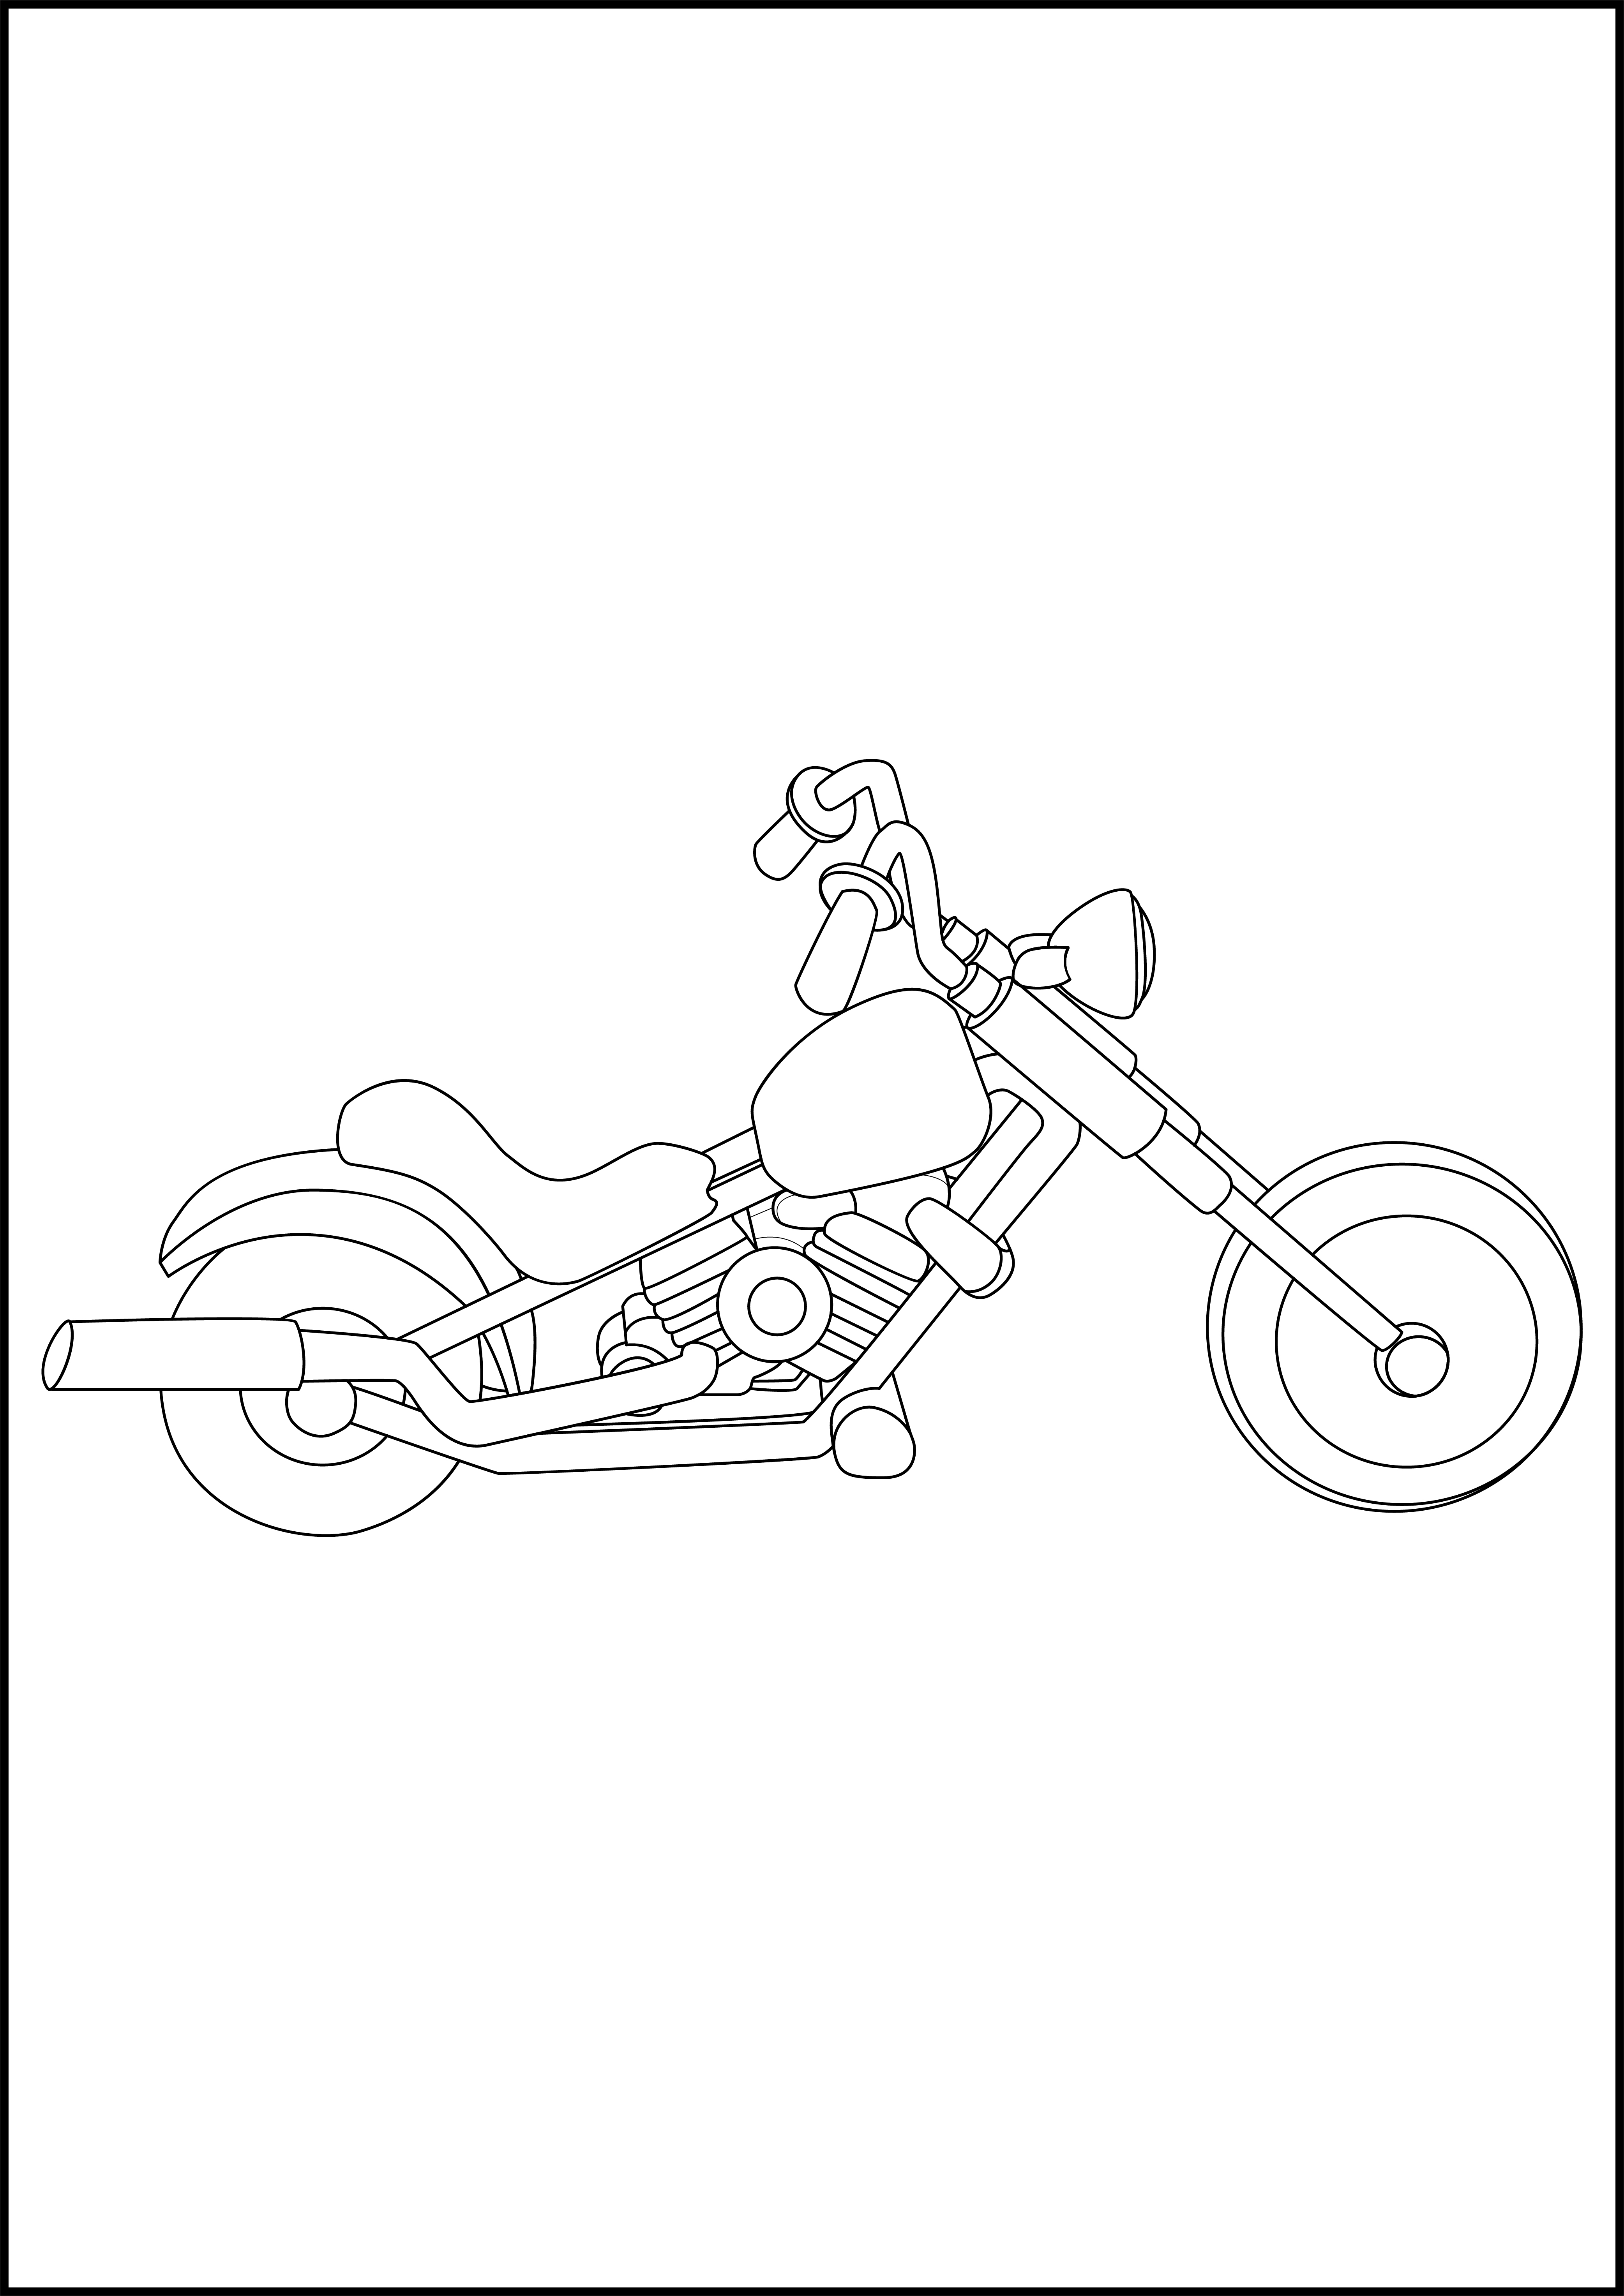 Раскраска мотоцикл «Рвущий ветер» формата А4 в высоком качестве